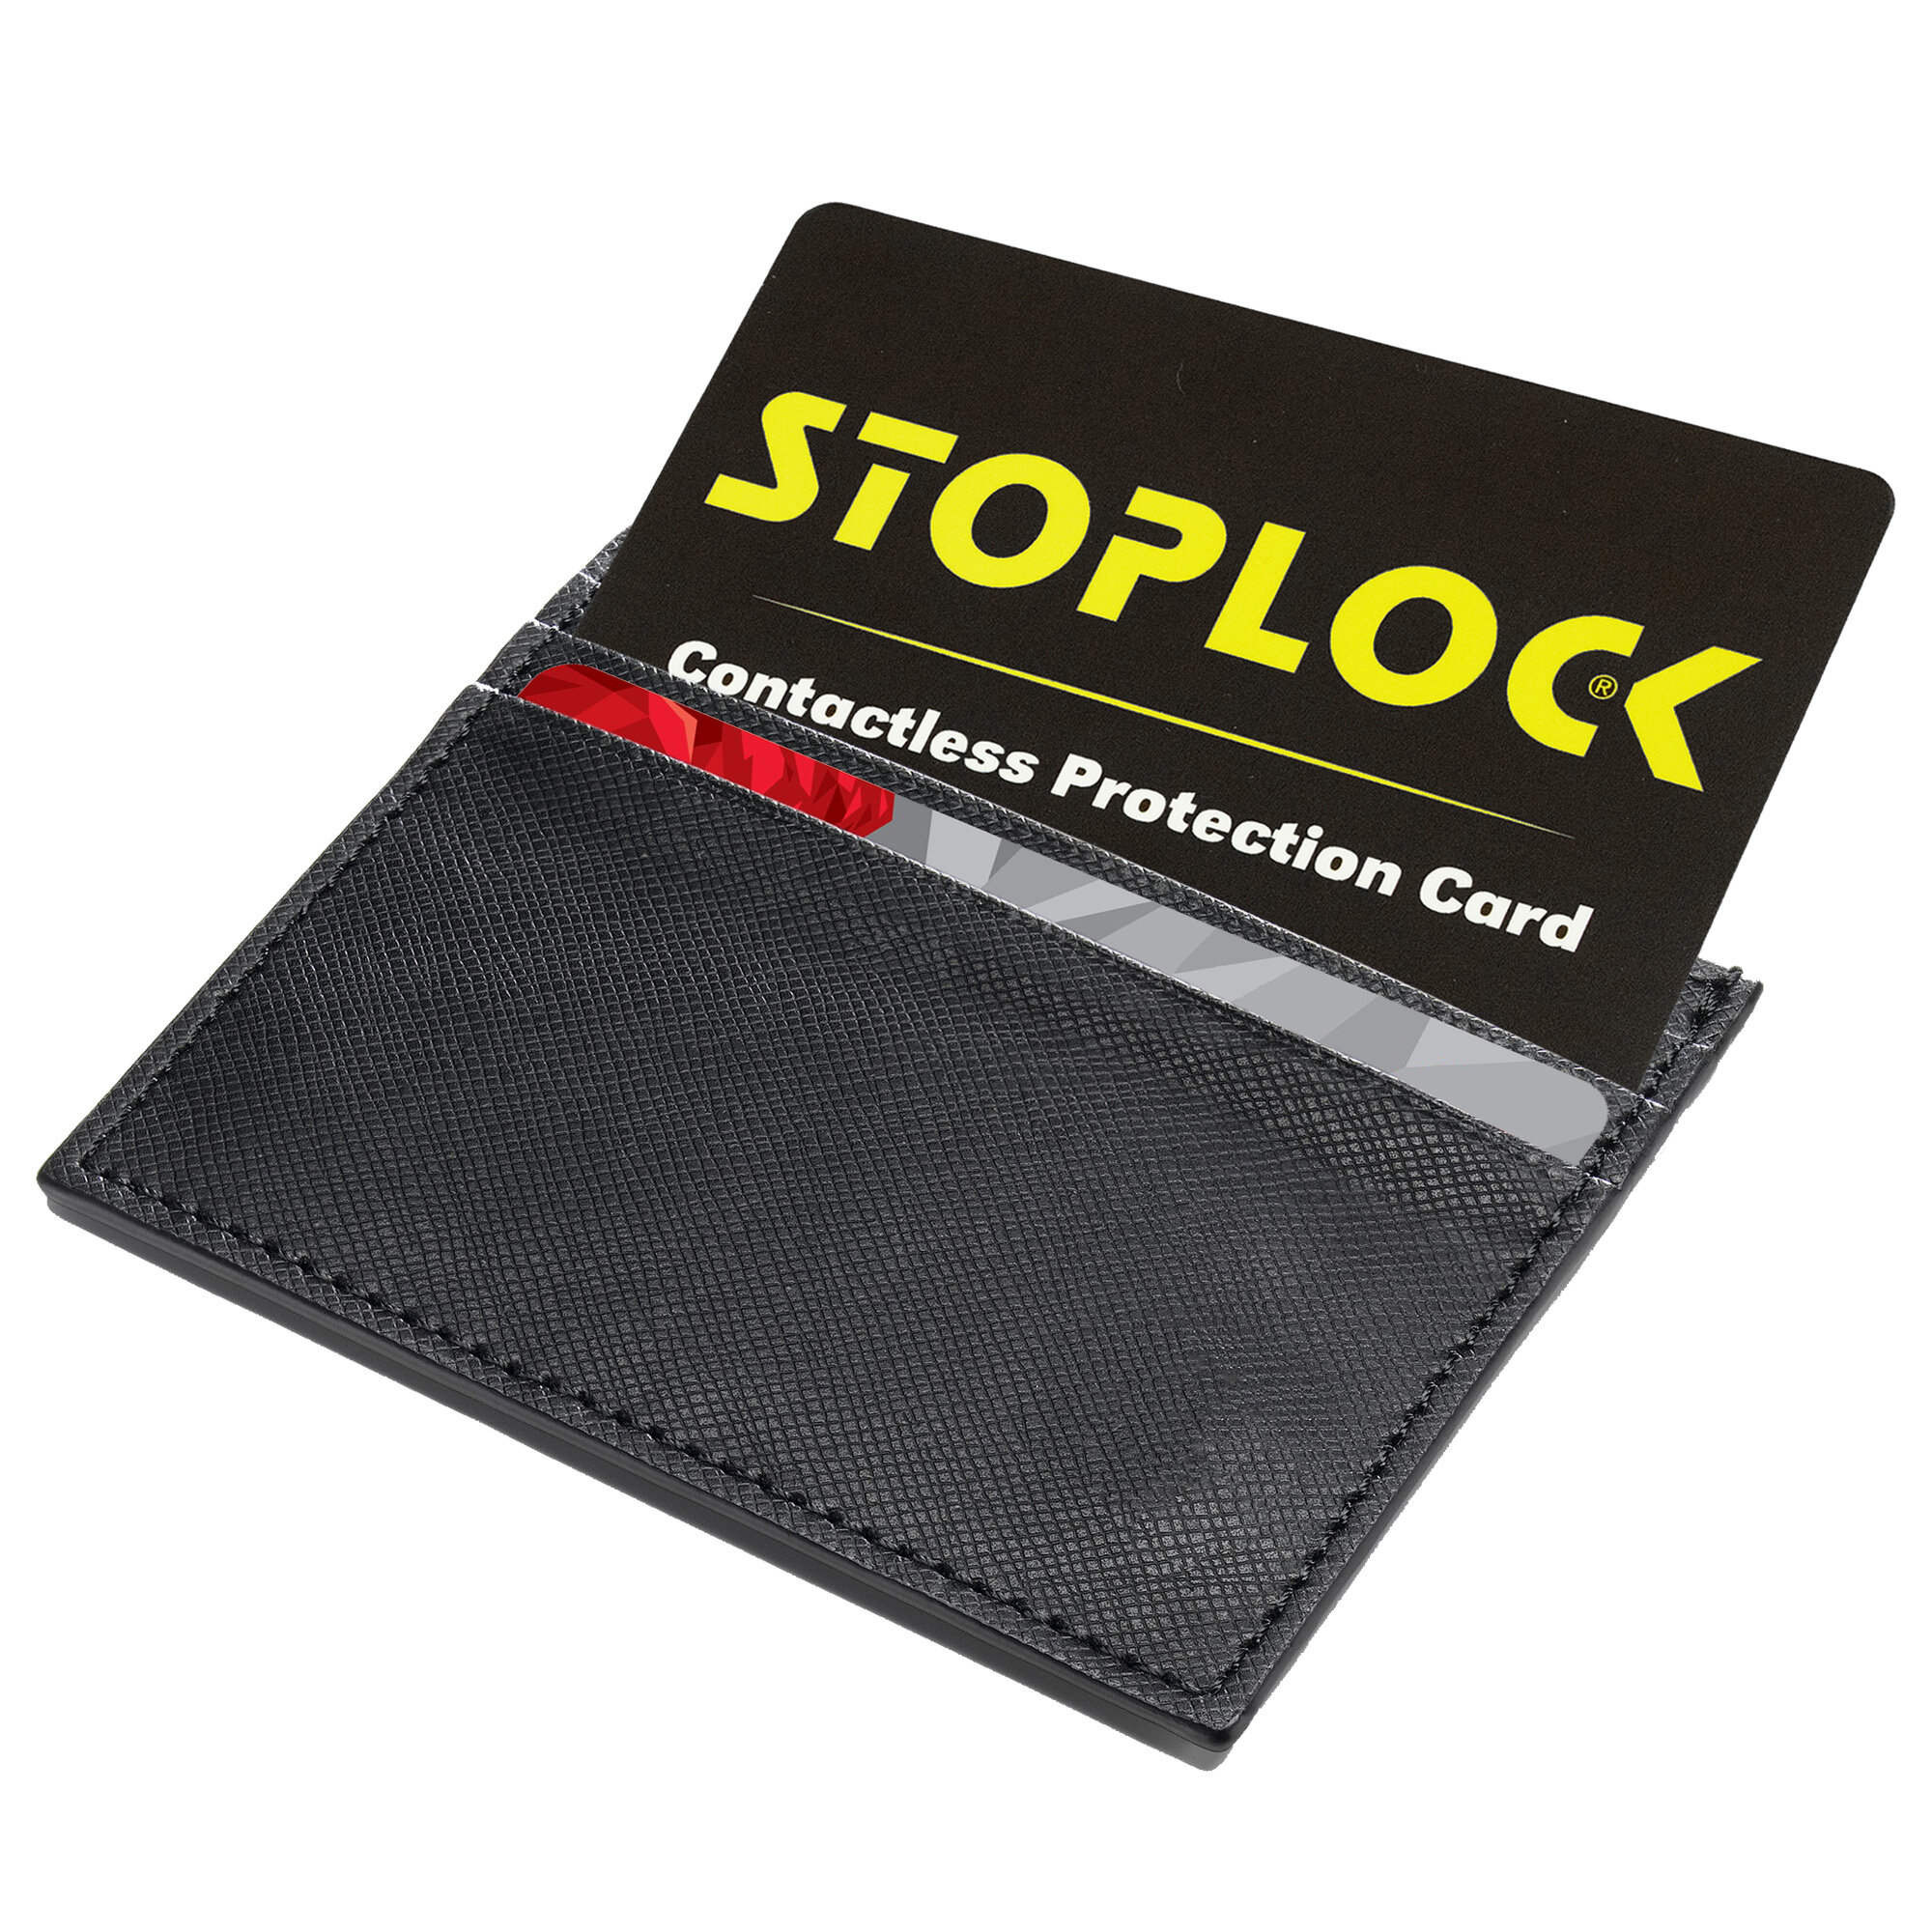 Stoplock_card-Wallet-2000px.jpg